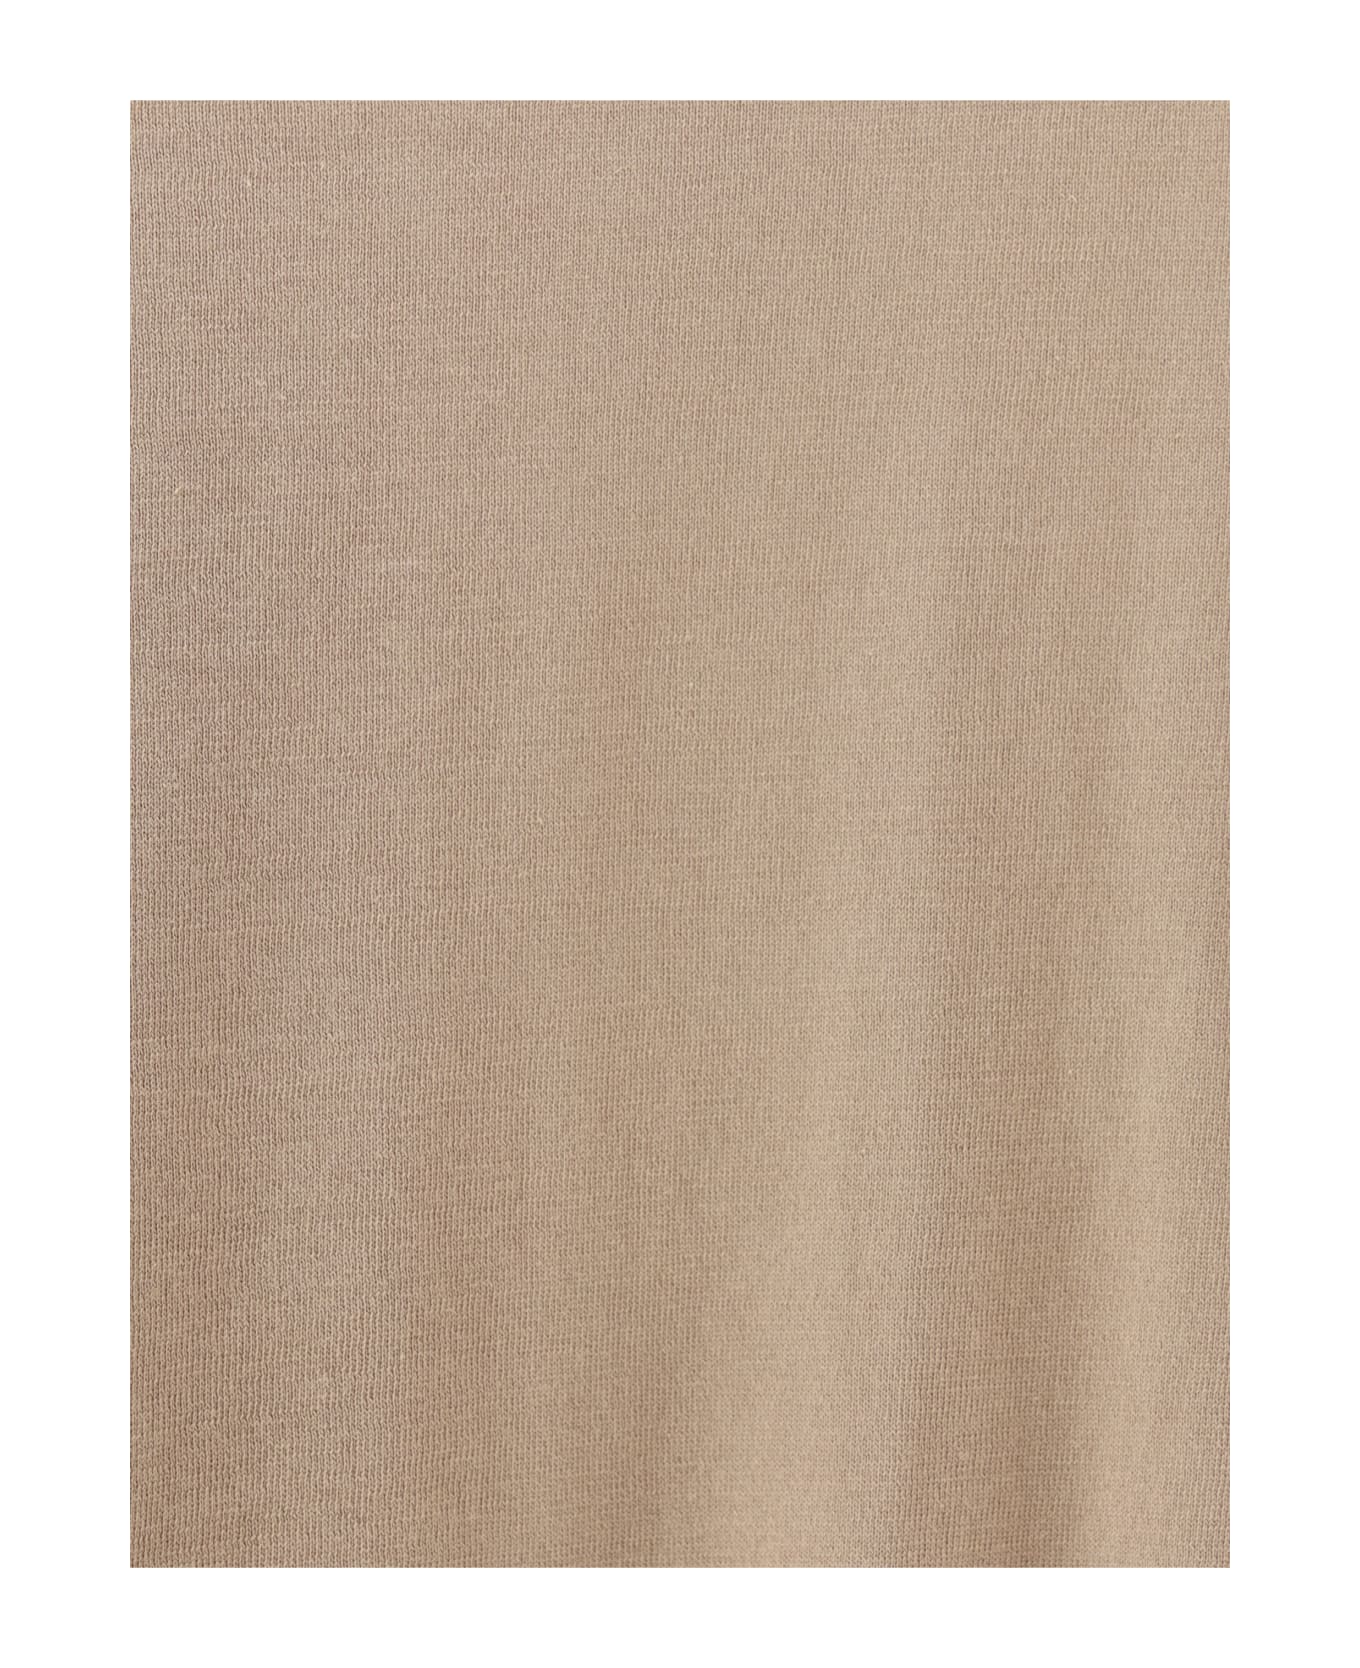 Brunello Cucinelli Polo Shirt - Creta+nebbia ポロシャツ